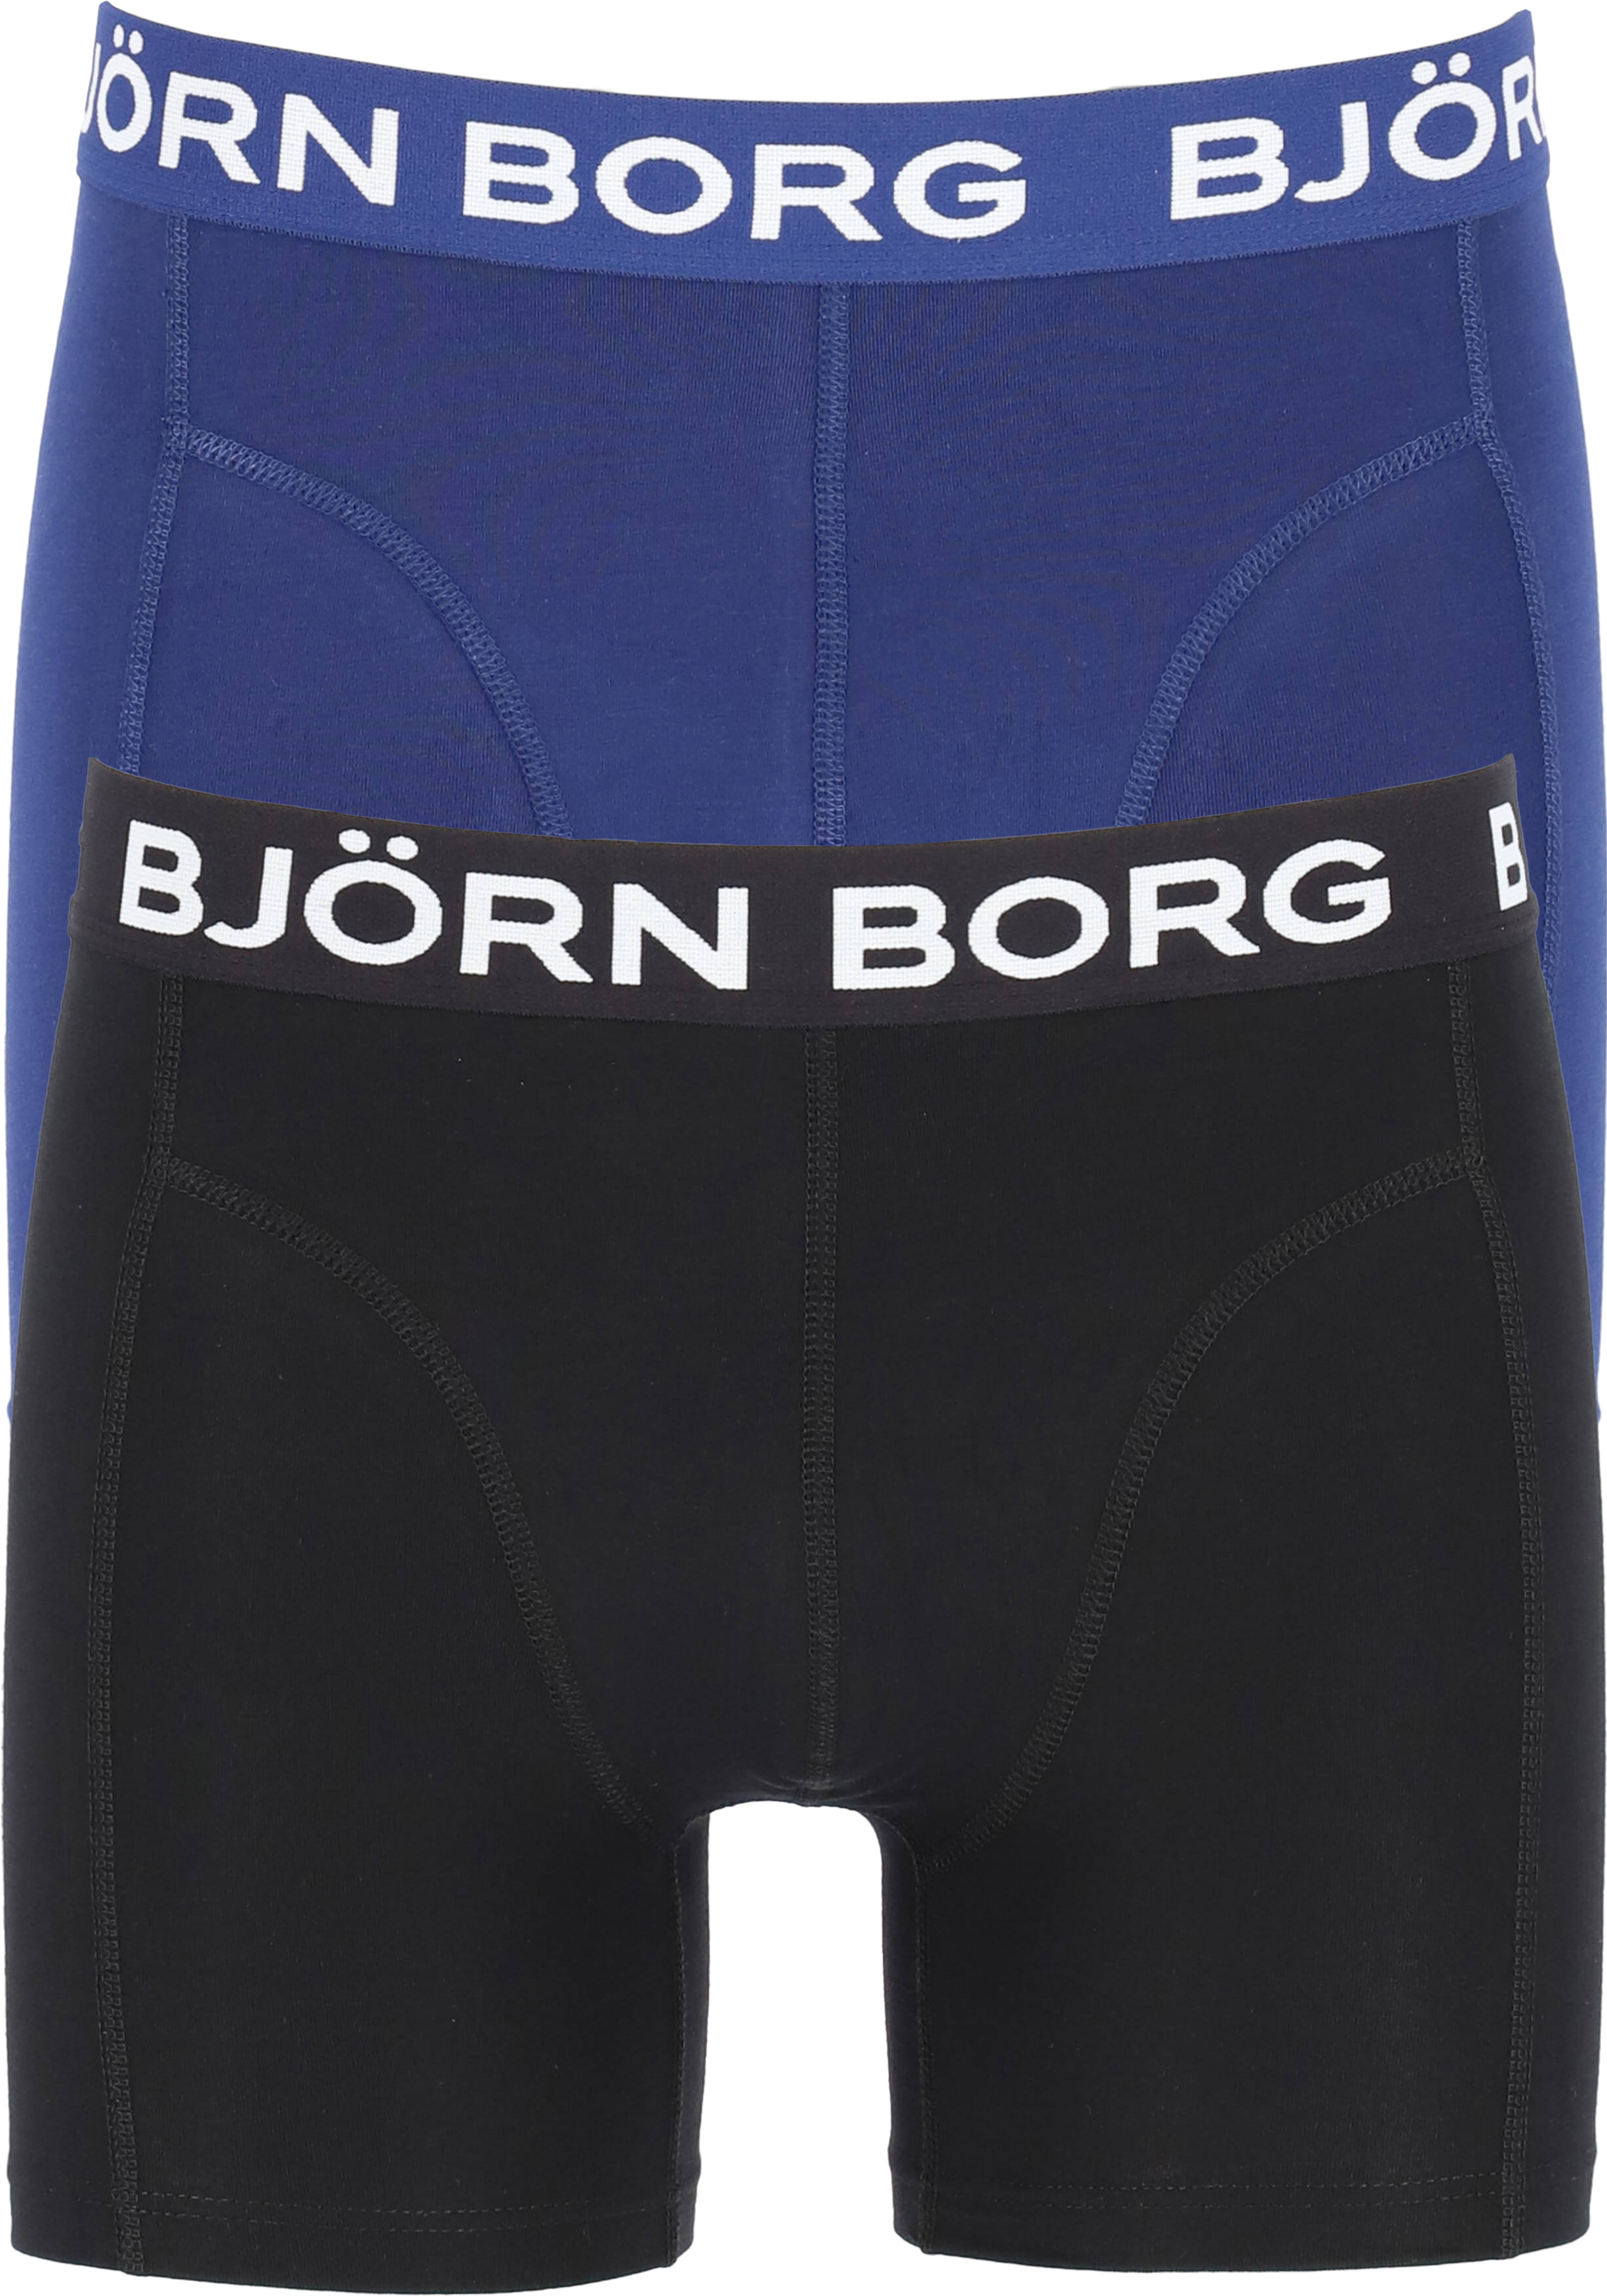 Netjes suiker neem medicijnen Bjorn Borg boxershorts Core (2-pack), heren boxers normale lengte, zwart...  - Zomer SALE tot 50% korting